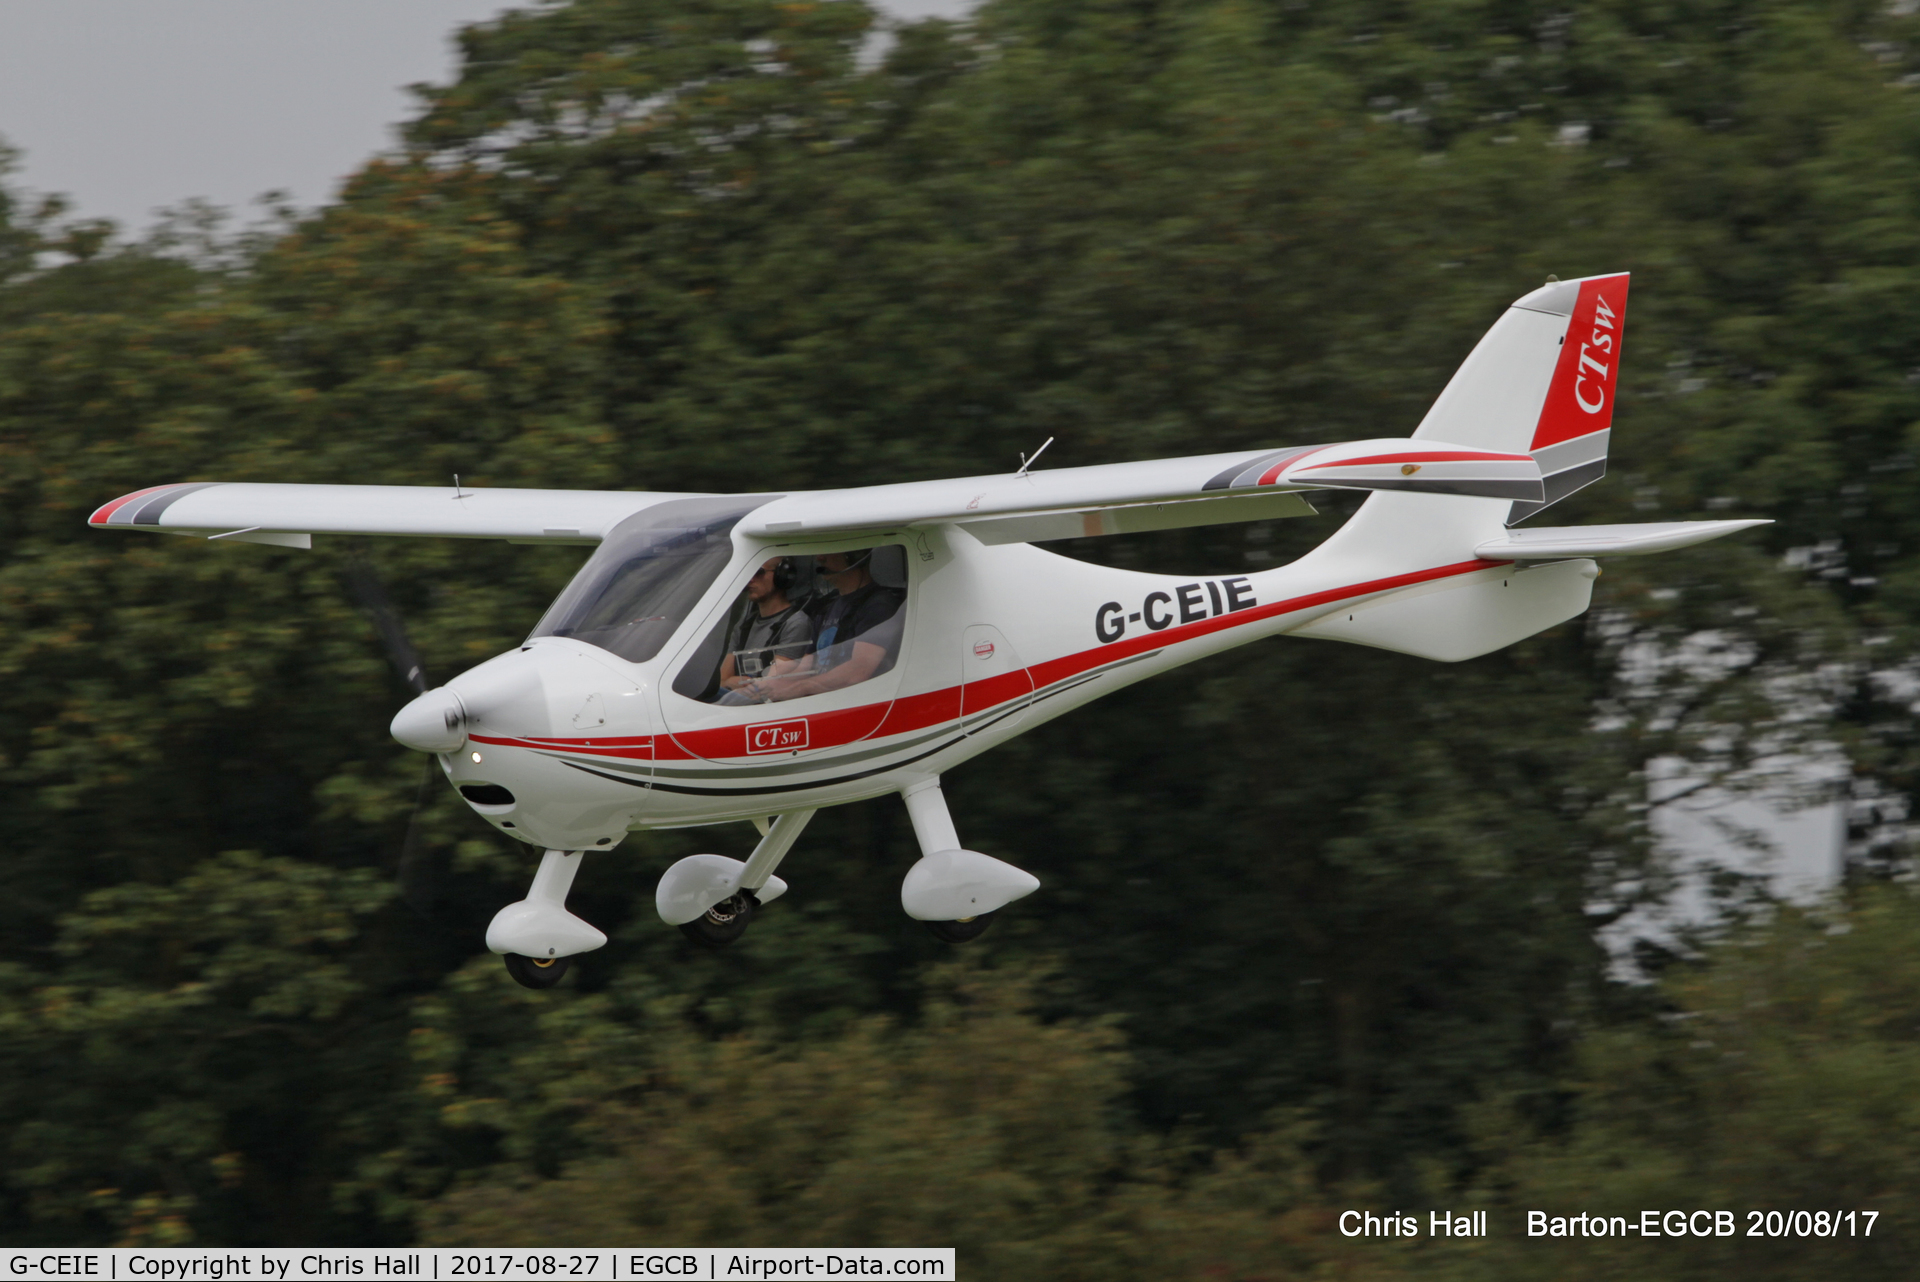 G-CEIE, 2006 Flight Design CTSW C/N 8243, at Barton